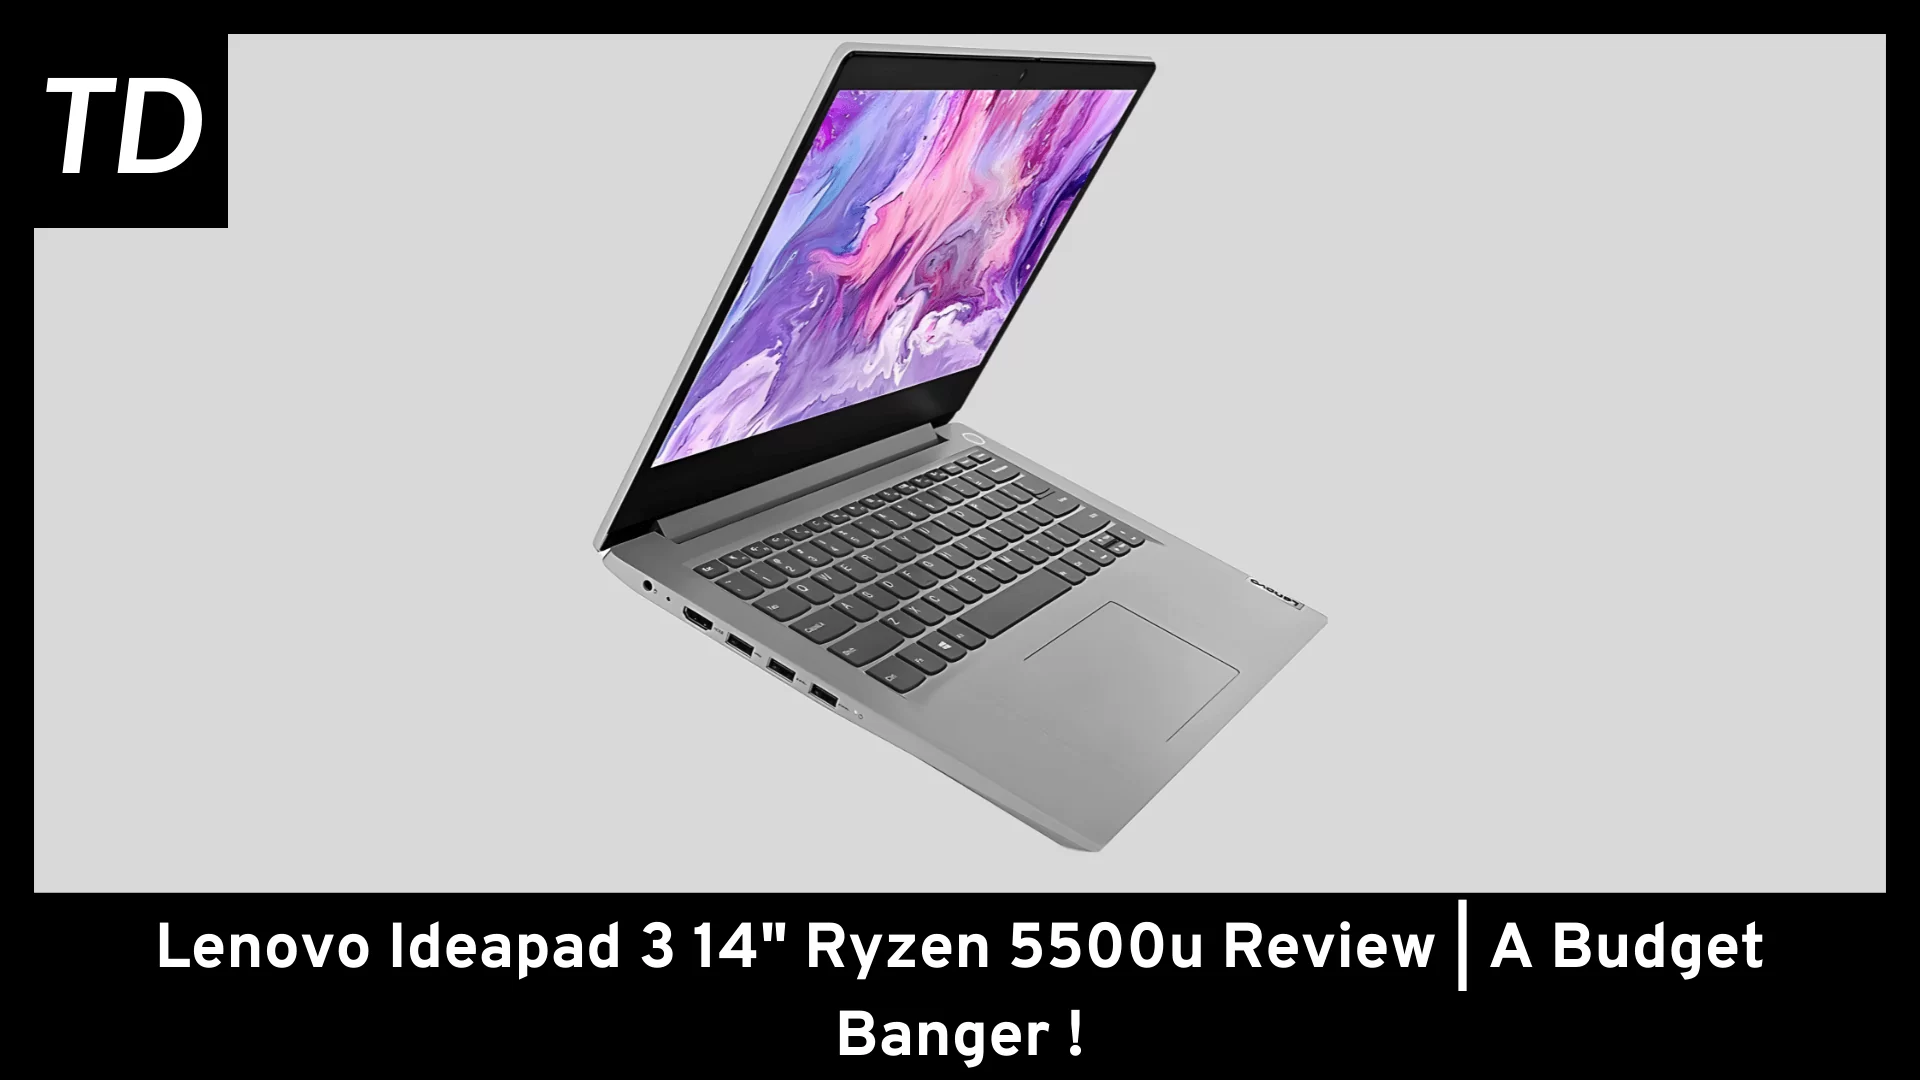 Lenovo Ideapad 3 14" Ryzen 5500u Review | A budget banger!